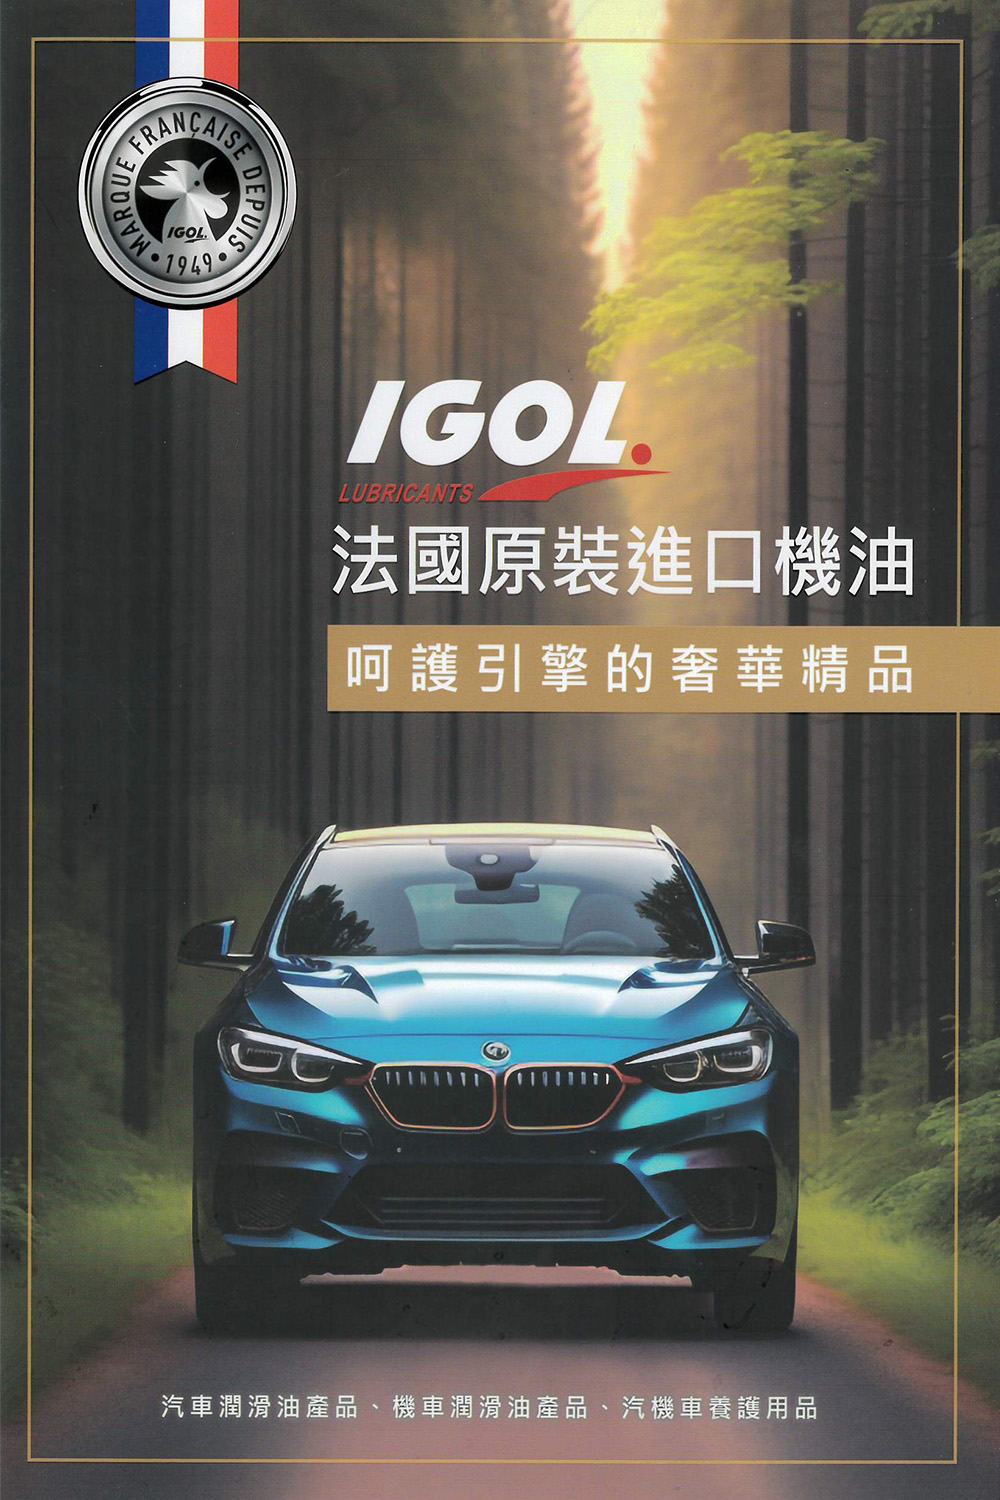 IGOL法國原裝進口機油 PROPULS LR 新型有機配方